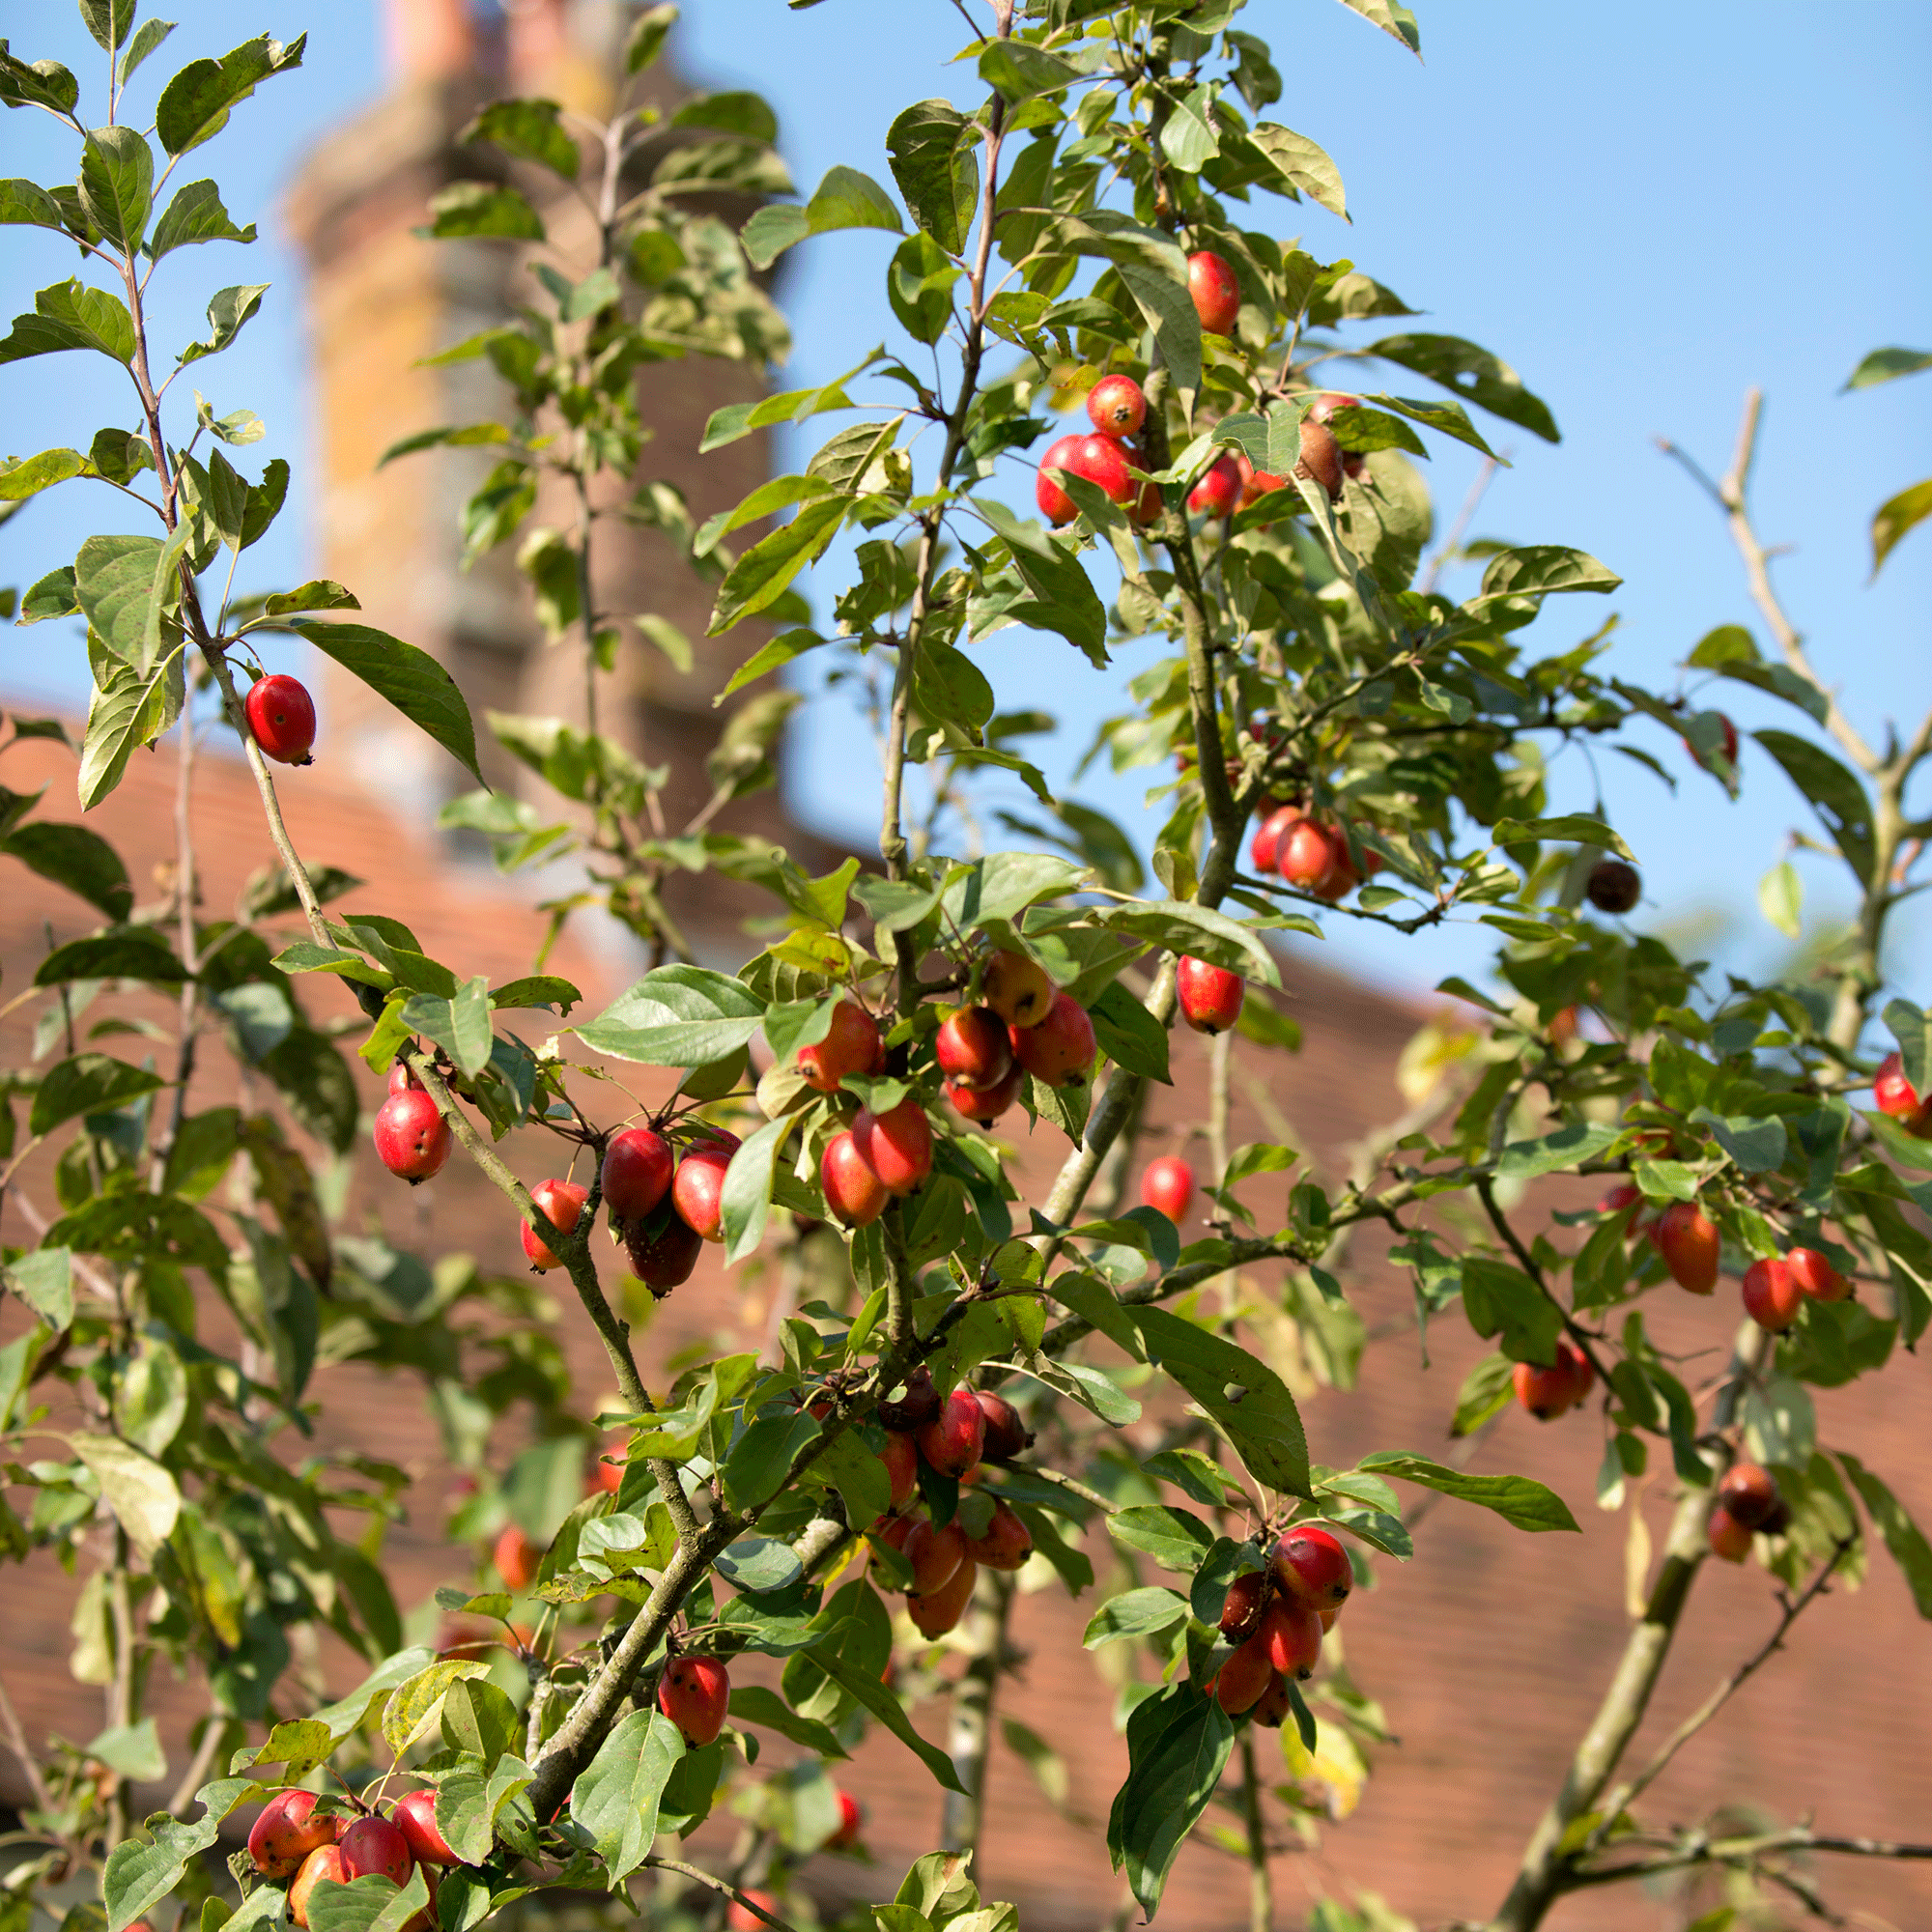 Apple tree in garden with fruit